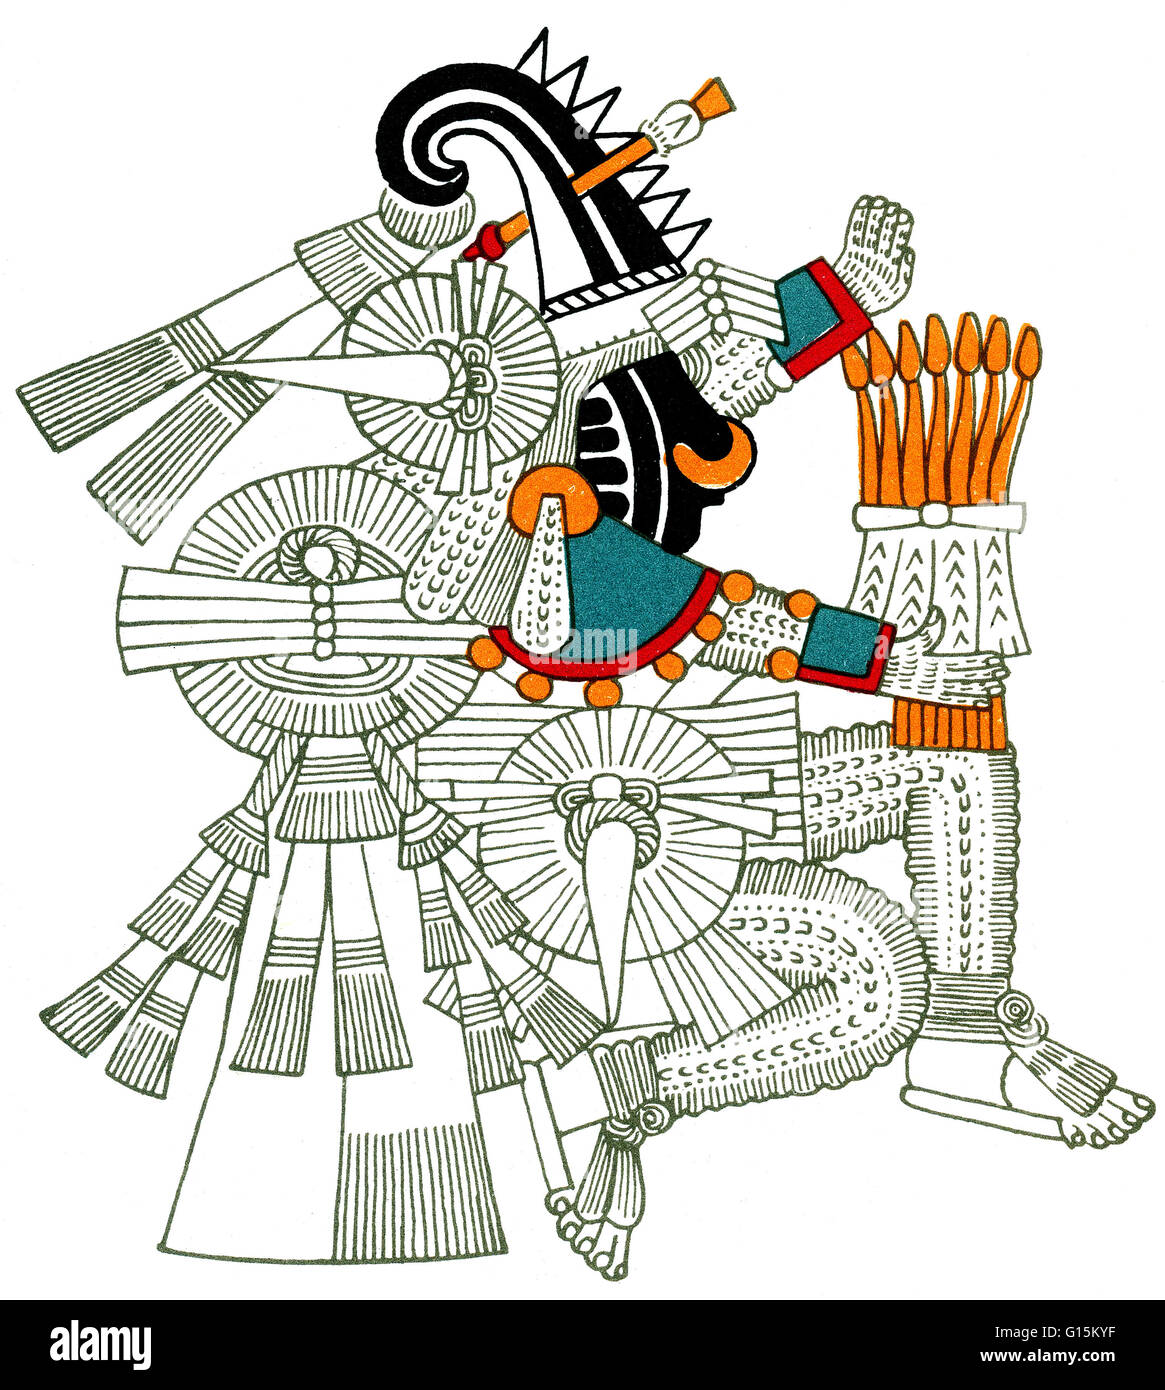 Iztlacoliuhqui, desde el Codex Borbonicus. En la mitología azteca, Itztlacoliuhqui es el dios de la escarcha, el frío cosas difíciles, castigo y miseria humana. Anteriormente fue conocida como Tlahuizcalpantecuhtli, quien disparó una flecha al dios sol, Tonatiuh. La flecha sig Foto de stock